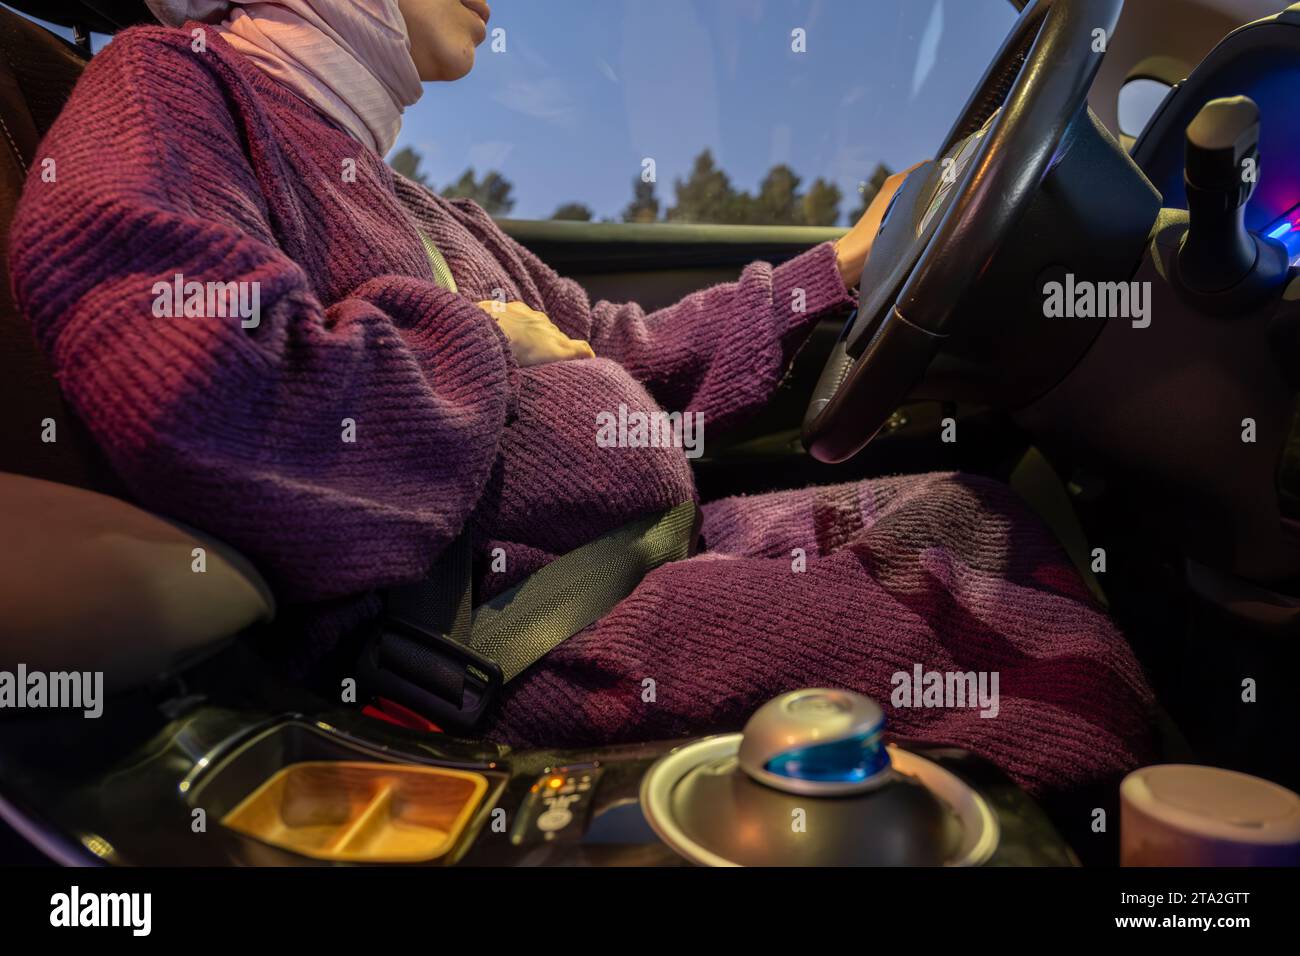 Eine schwangere Frau, die einen Sicherheitsgurt trägt, fährt ein Auto.  Sicherheit und Fahrverhalten während der Schwangerschaft, auf Reisen  Stockfotografie - Alamy